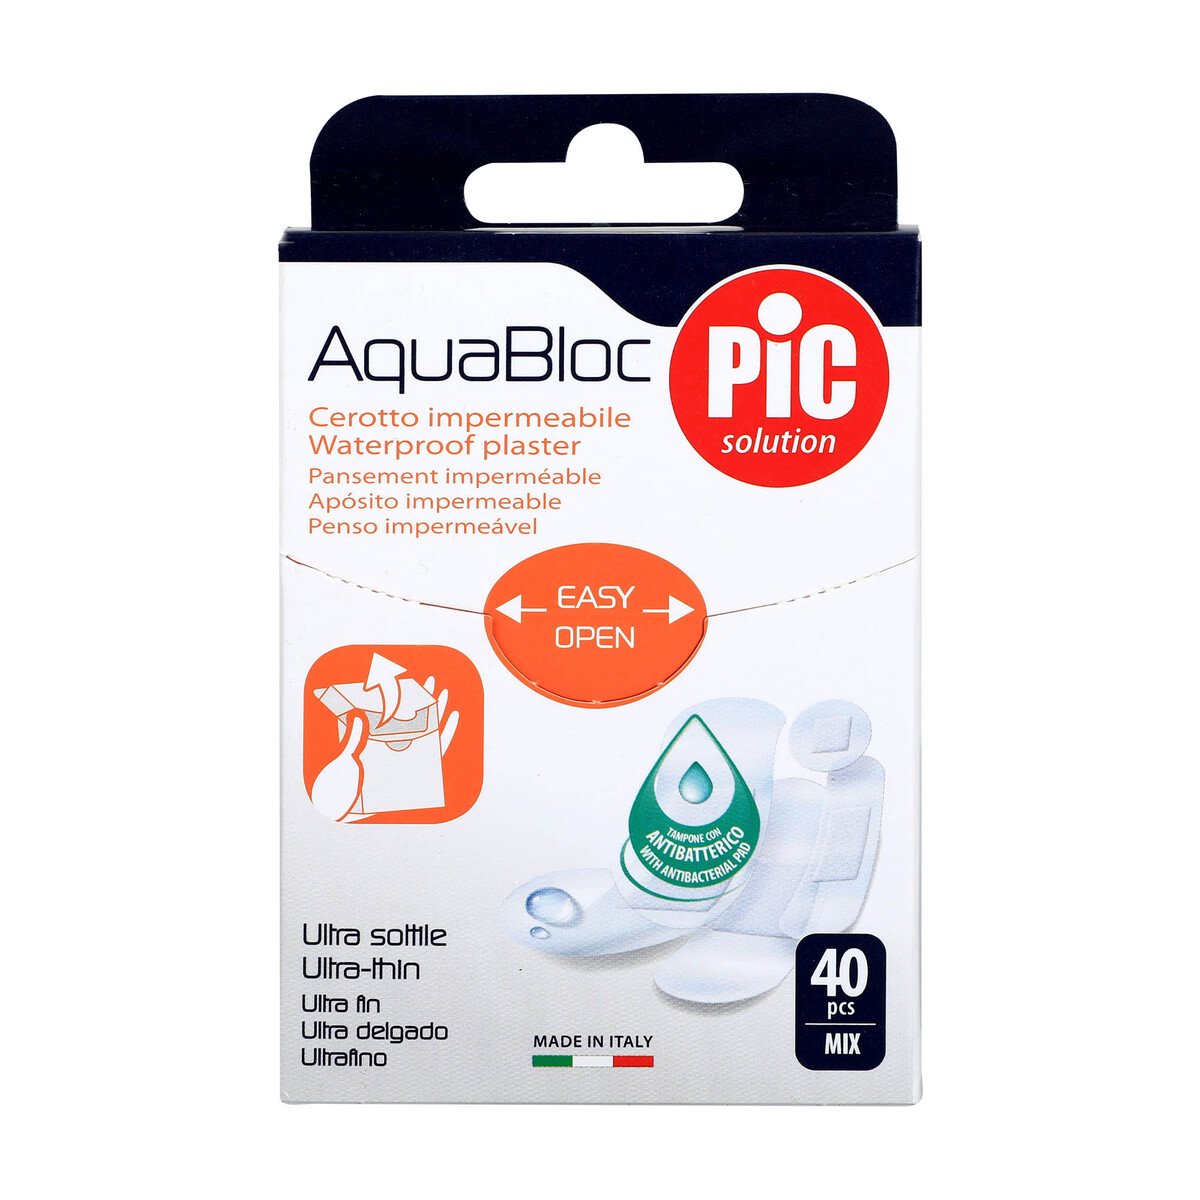 Pic AquaBloc Water Proof Plaster Mix, 40 Pcs